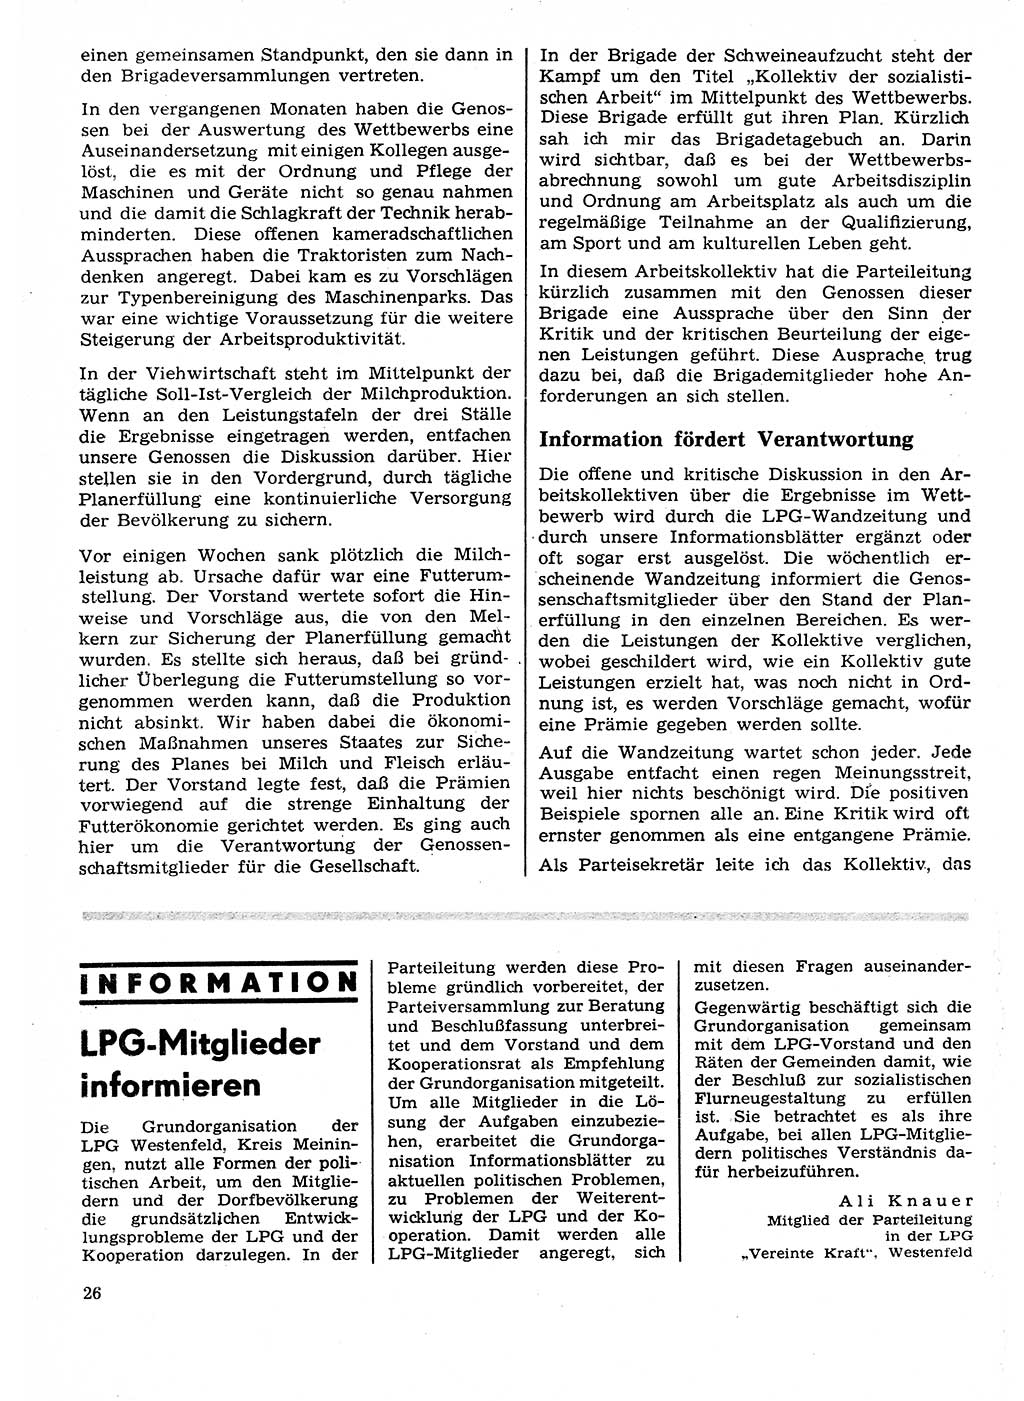 Neuer Weg (NW), Organ des Zentralkomitees (ZK) der SED (Sozialistische Einheitspartei Deutschlands) für Fragen des Parteilebens, 27. Jahrgang [Deutsche Demokratische Republik (DDR)] 1972, Seite 26 (NW ZK SED DDR 1972, S. 26)